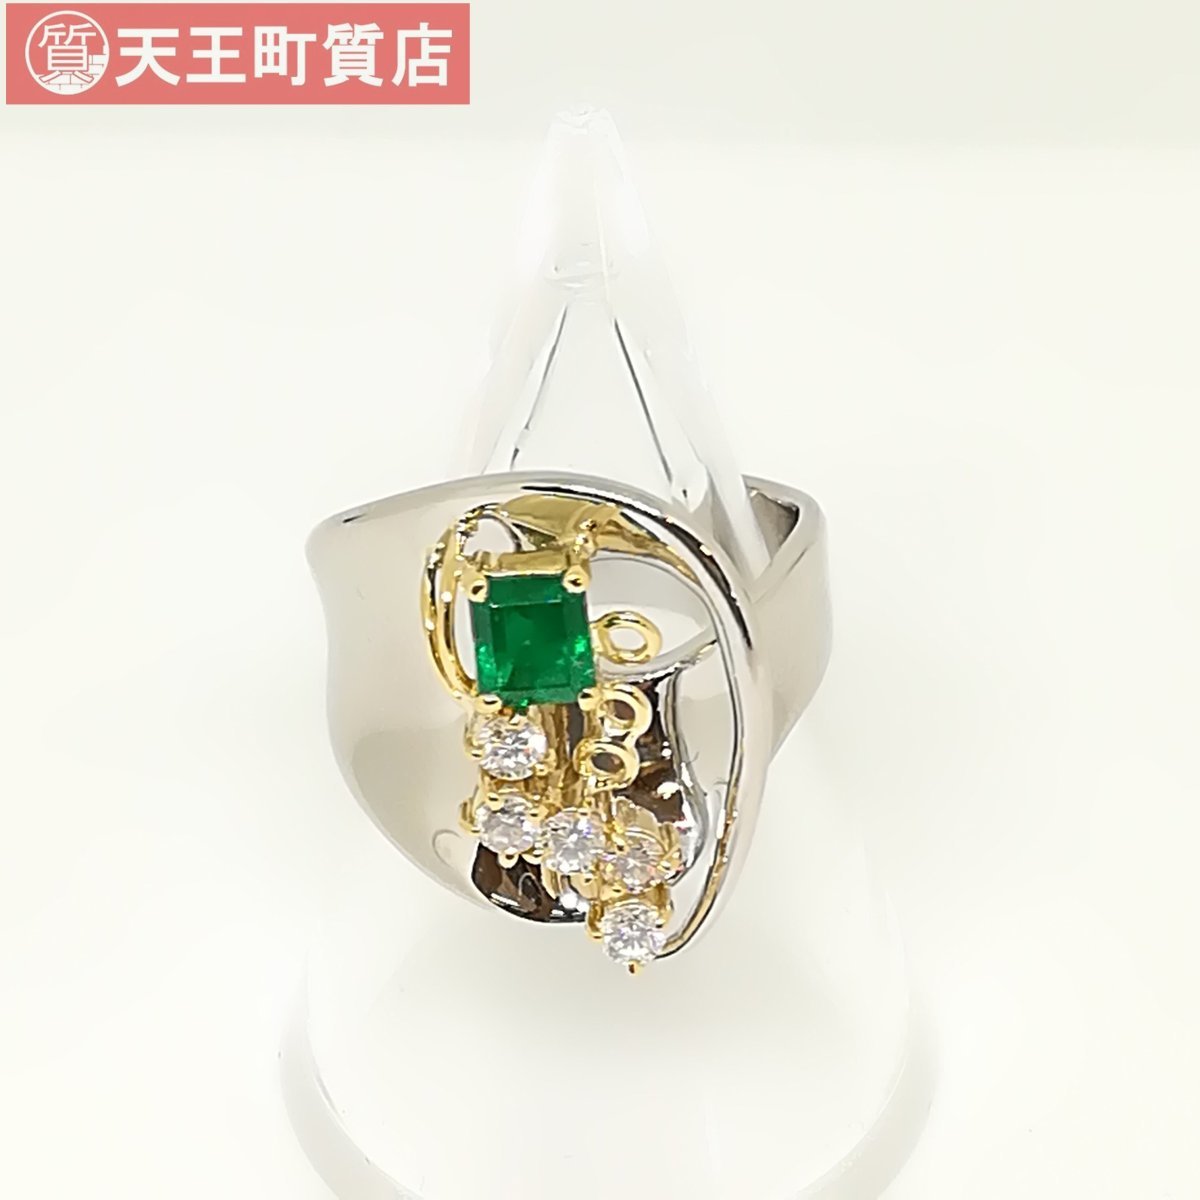 質屋出品【指輪】Pt900 K18 エメラルド ダイヤ デザイン リング 